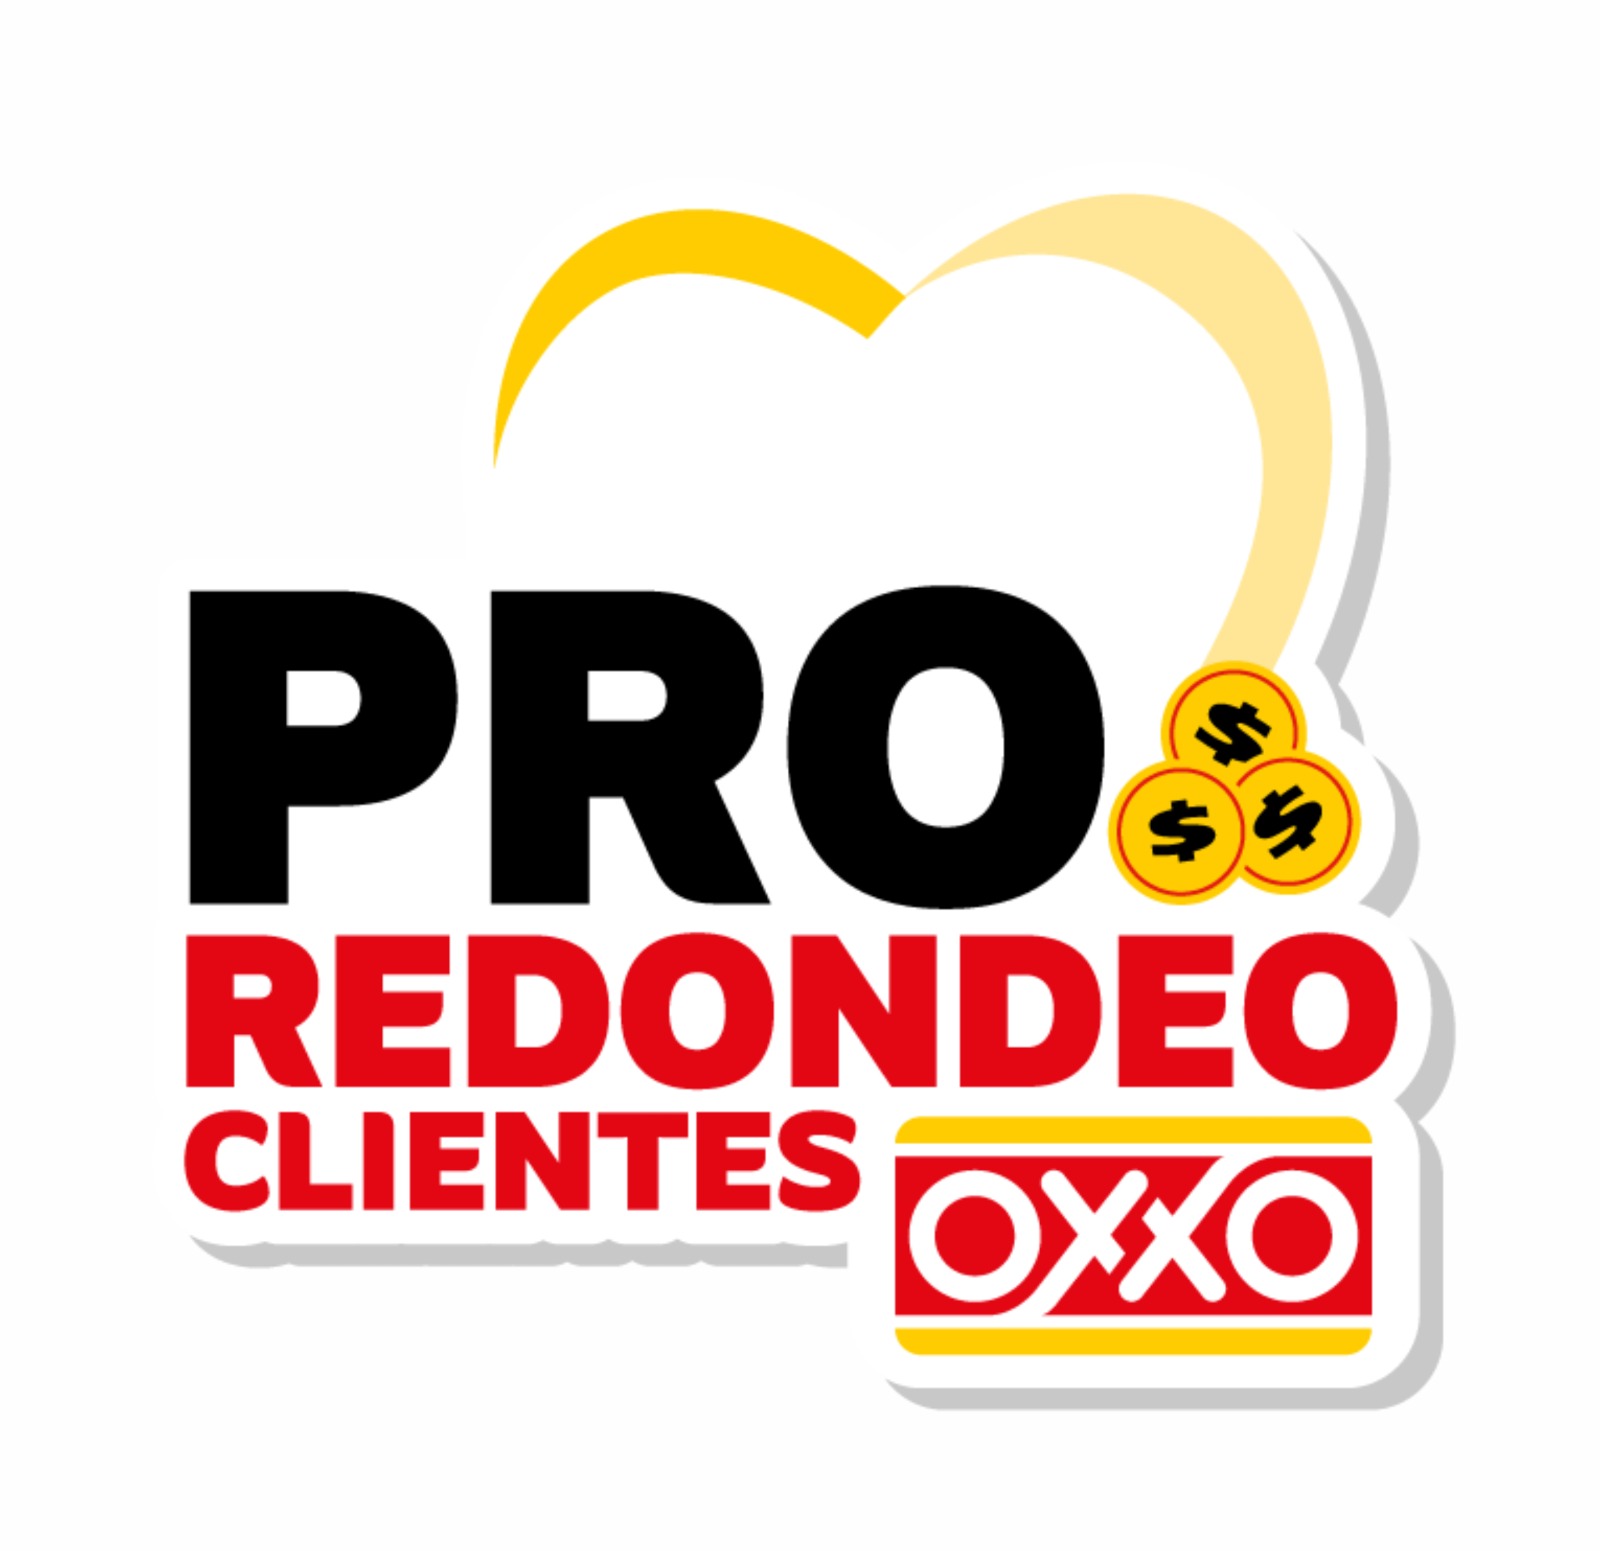 CANICA A.C. Redondeo OXXO campaña de recaudación